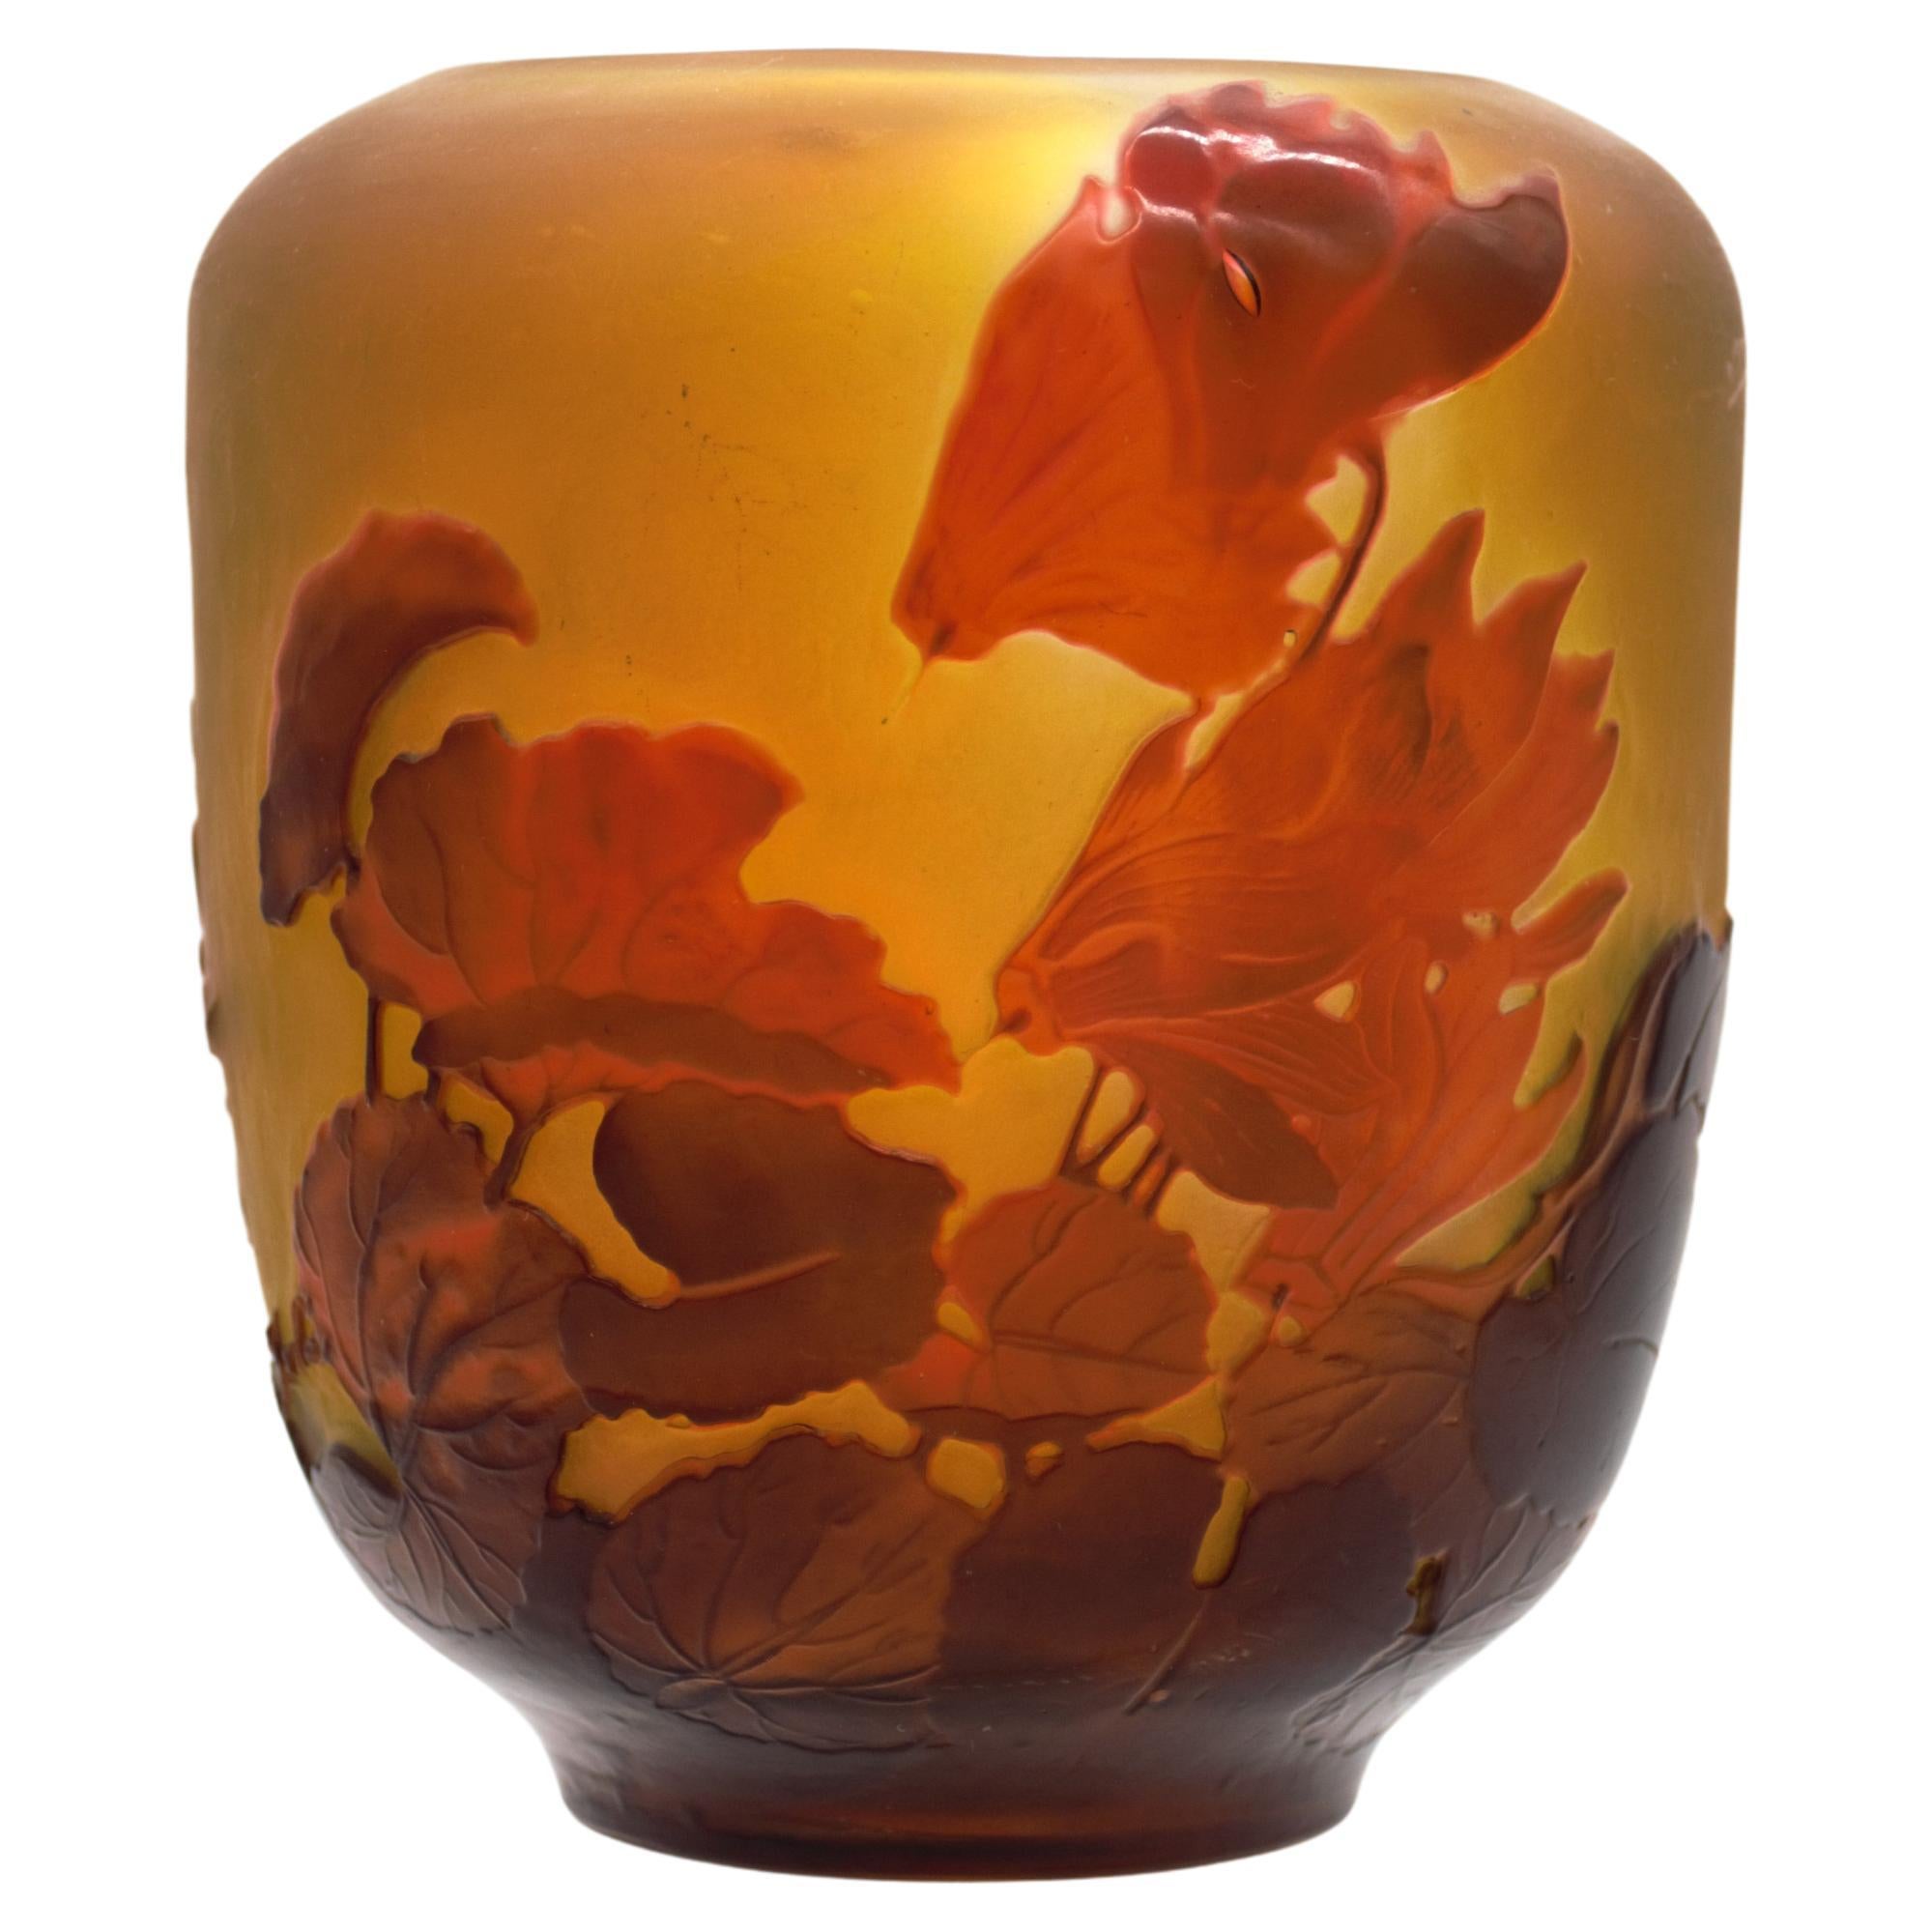 ÉMILE GALLÉ   Vase, circa 1900, verre camaïeu incrusté de fleurs de cyclamen rouges